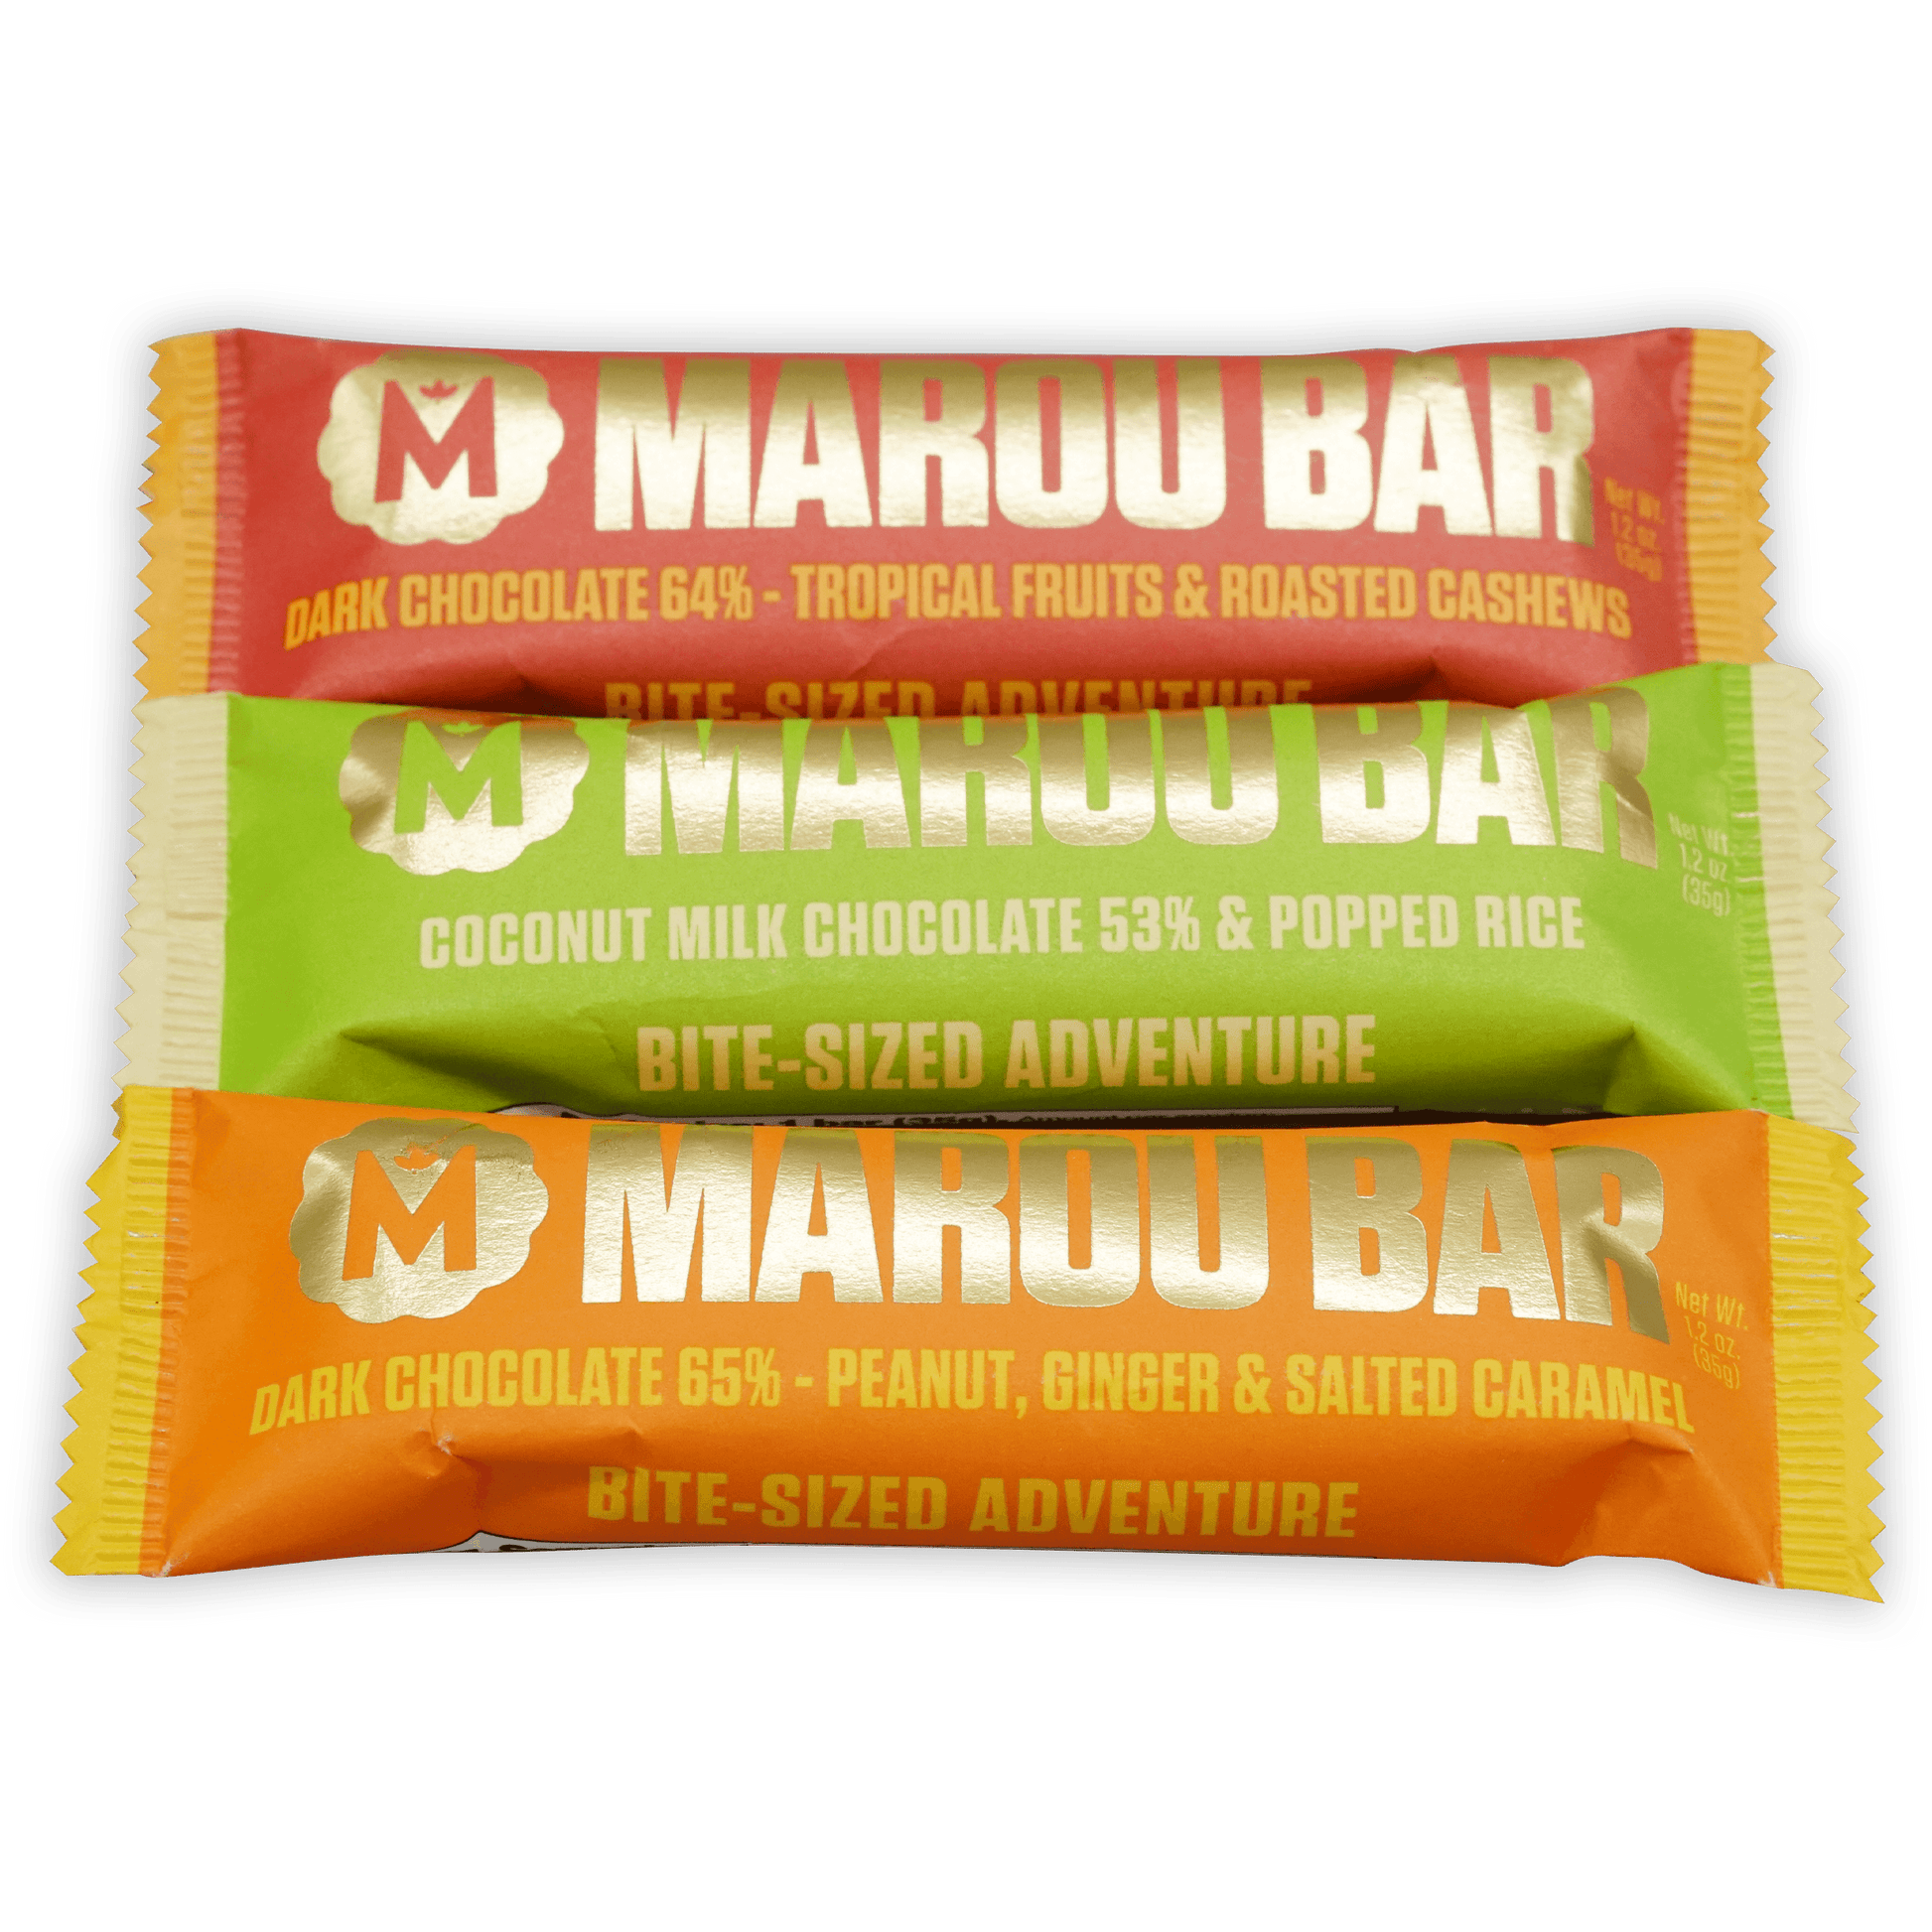 Marou Chocolate Bars